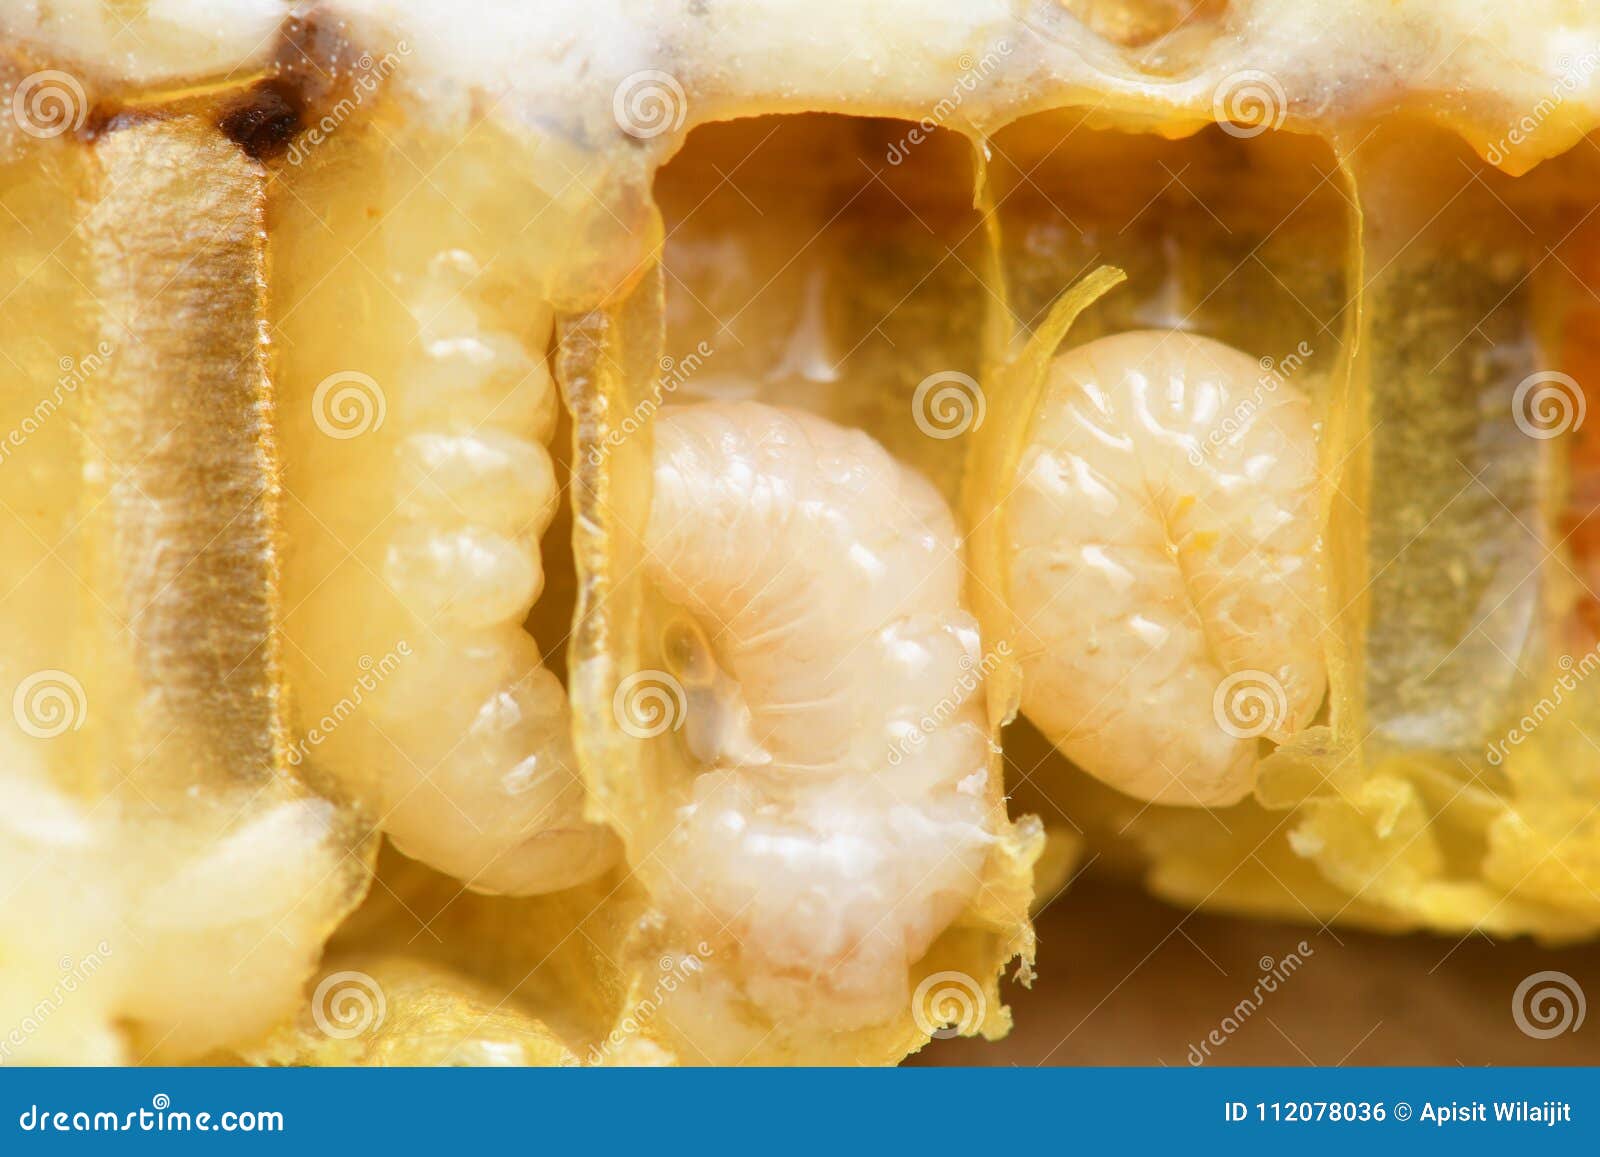 Larva Hymenoptera Royalty-Free Stock Photography | CartoonDealer.com ...